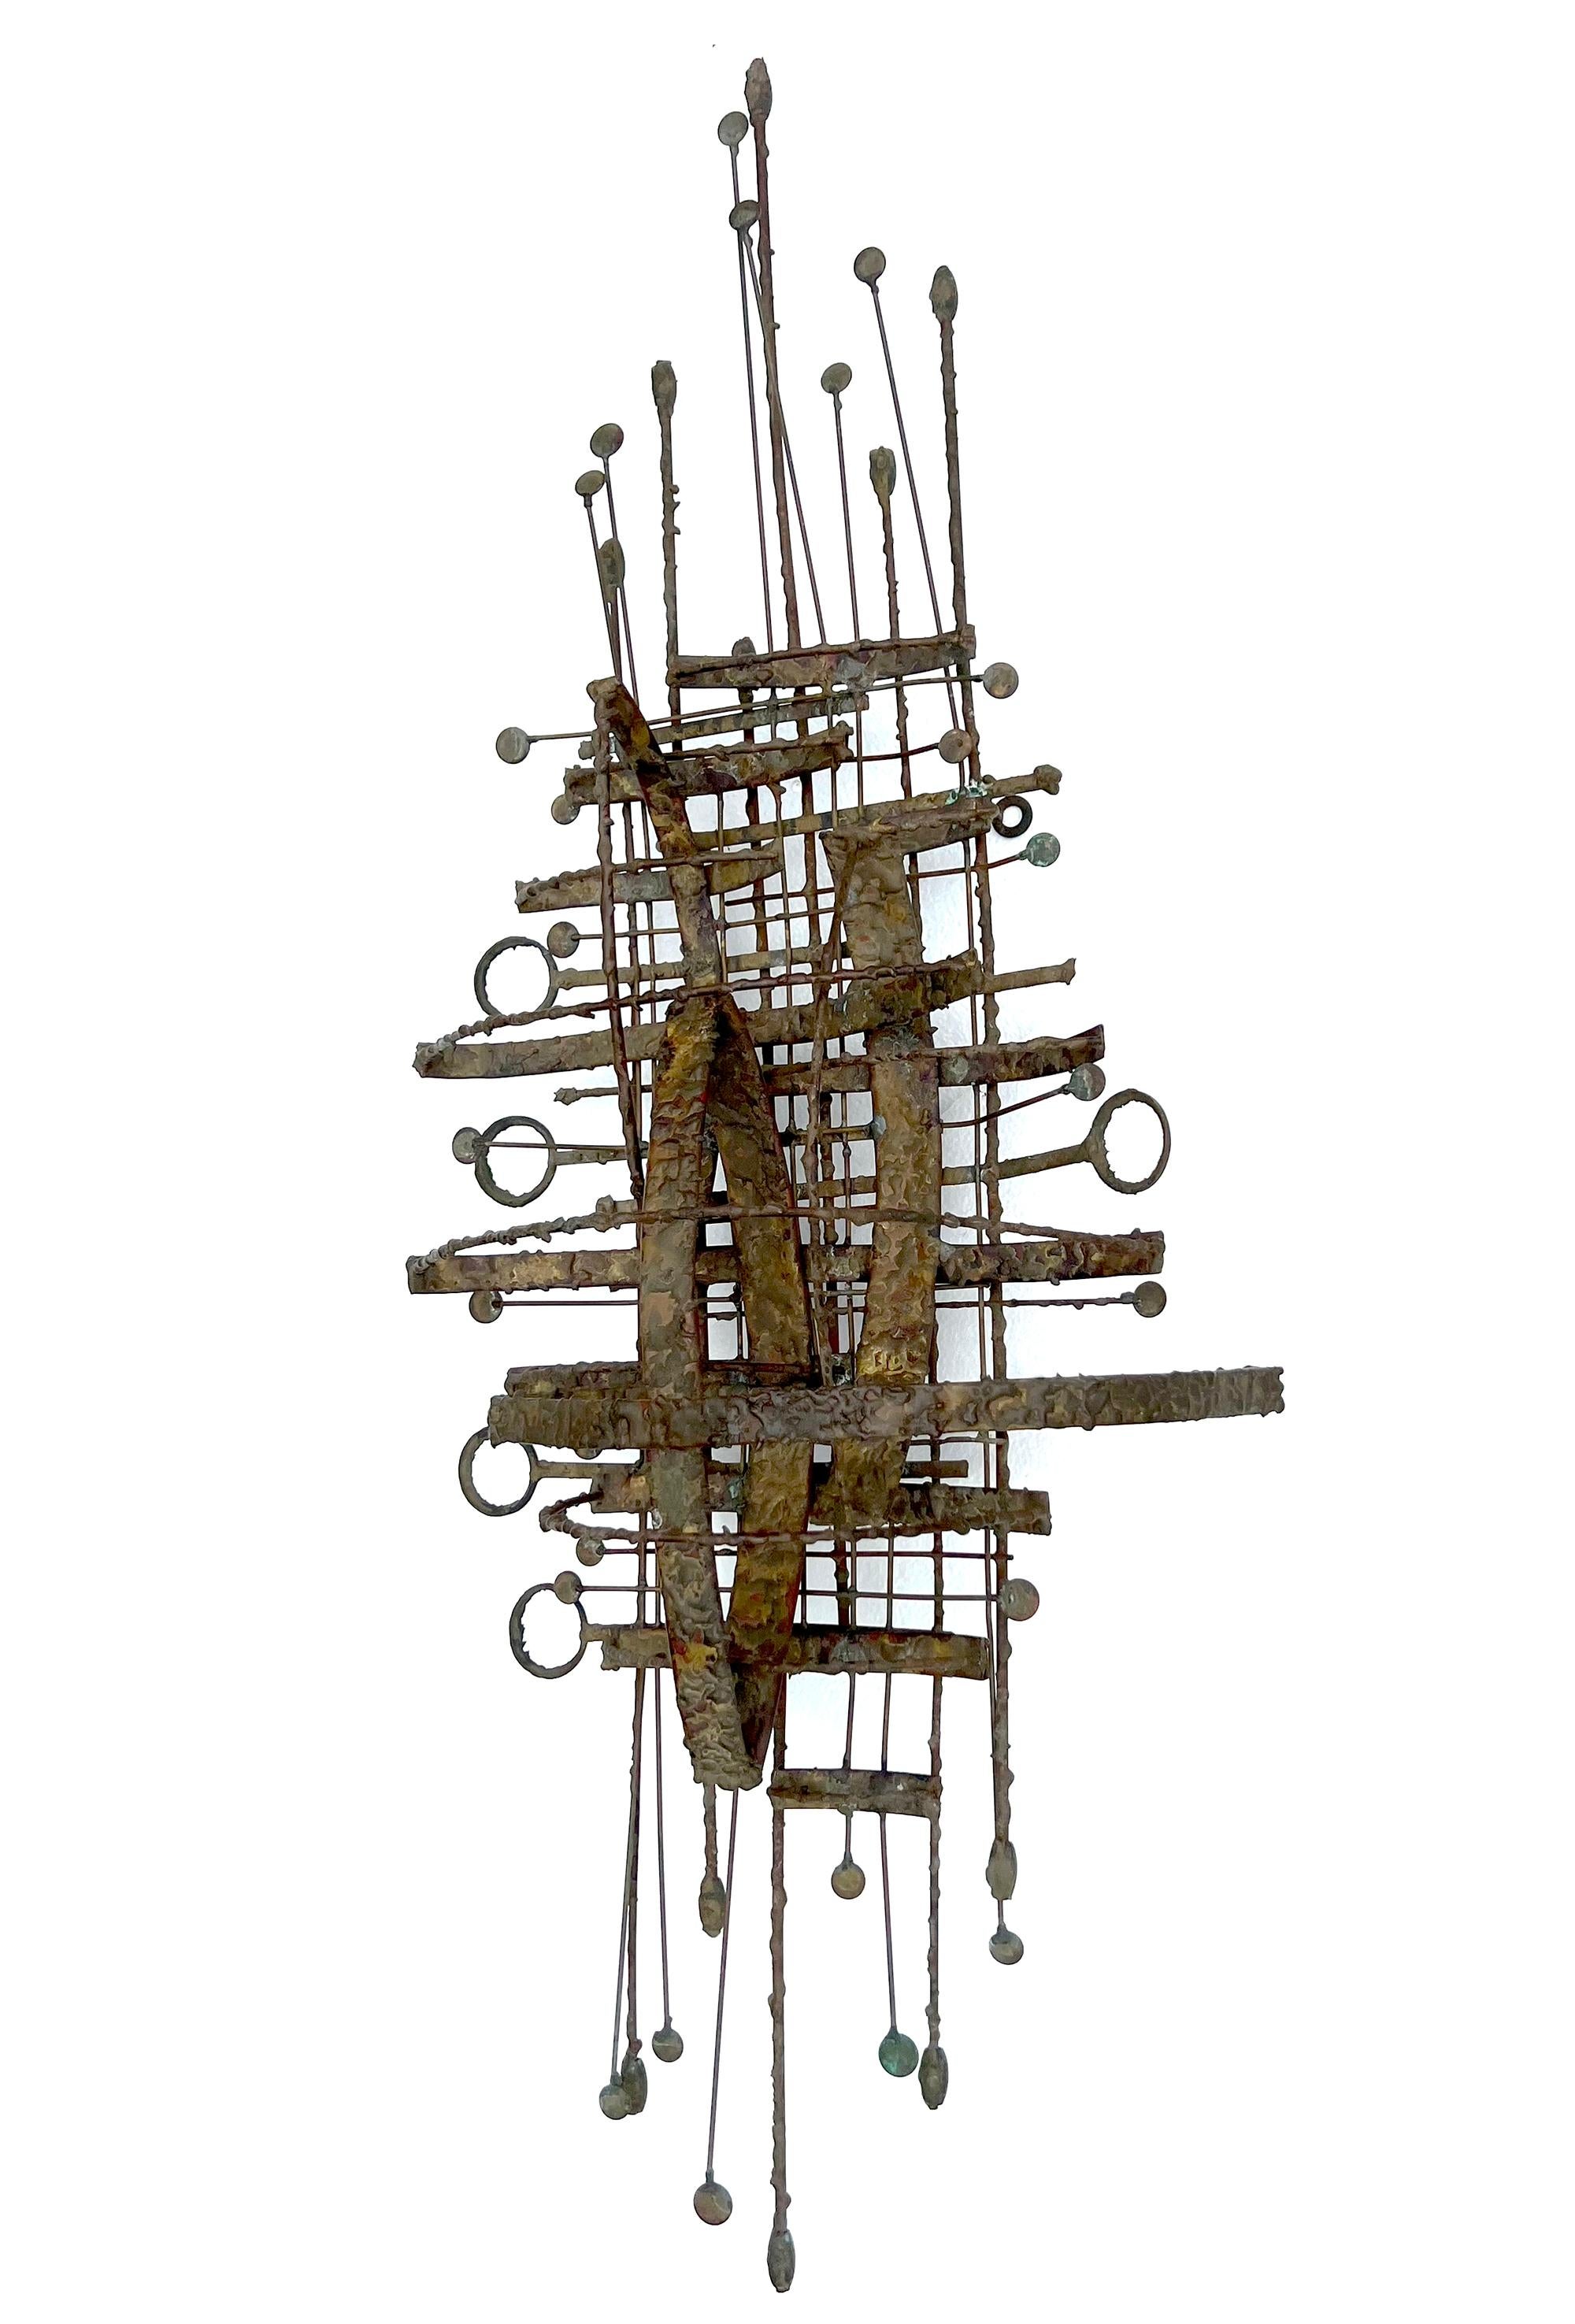 Abstrakte, modernistische Großskulptur aus gebranntem Stahl und Kupfer des Künstlers Phil Rowe aus Chicago, Illinois. Die Skulptur kann sowohl vertikal als auch horizontal aufgehängt werden und ist mit eingebauten Hakenaufhängern ausgestattet. Das